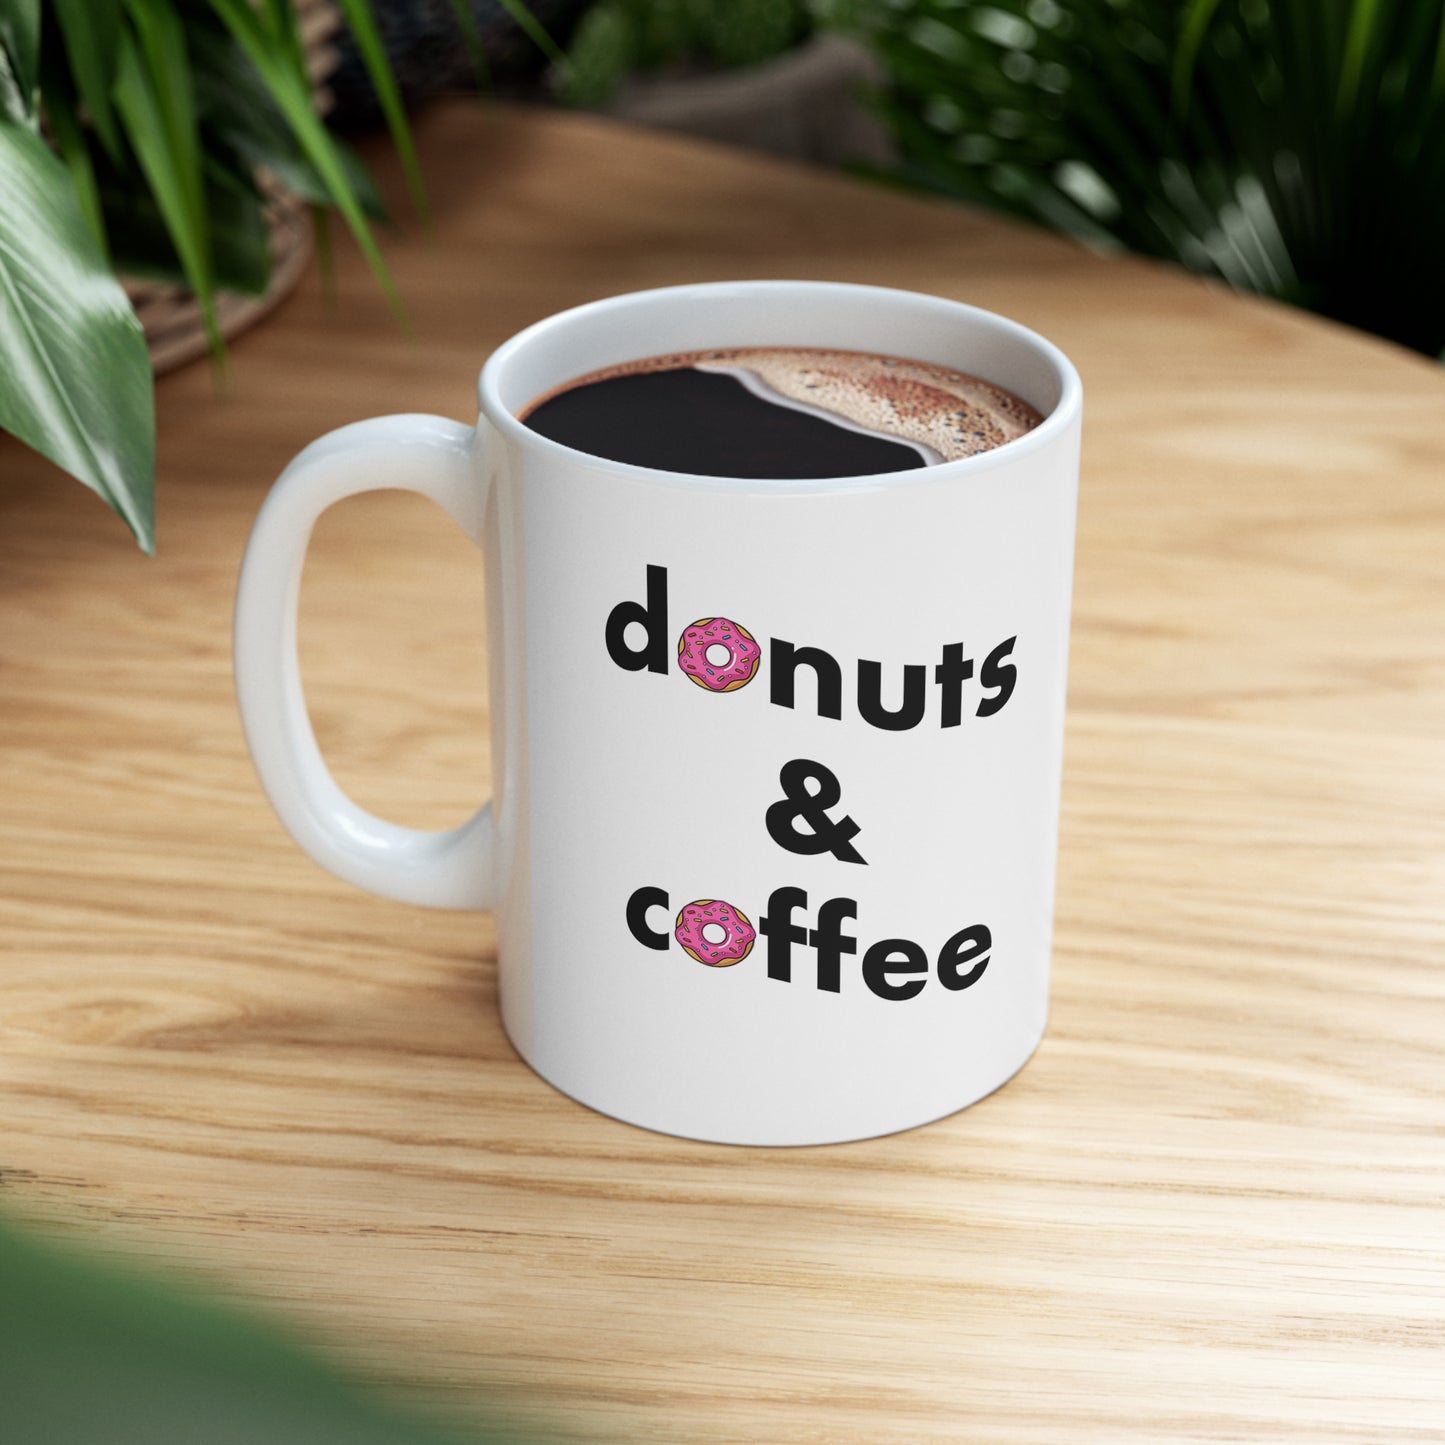 Donuts & Coffee Mug - Black text